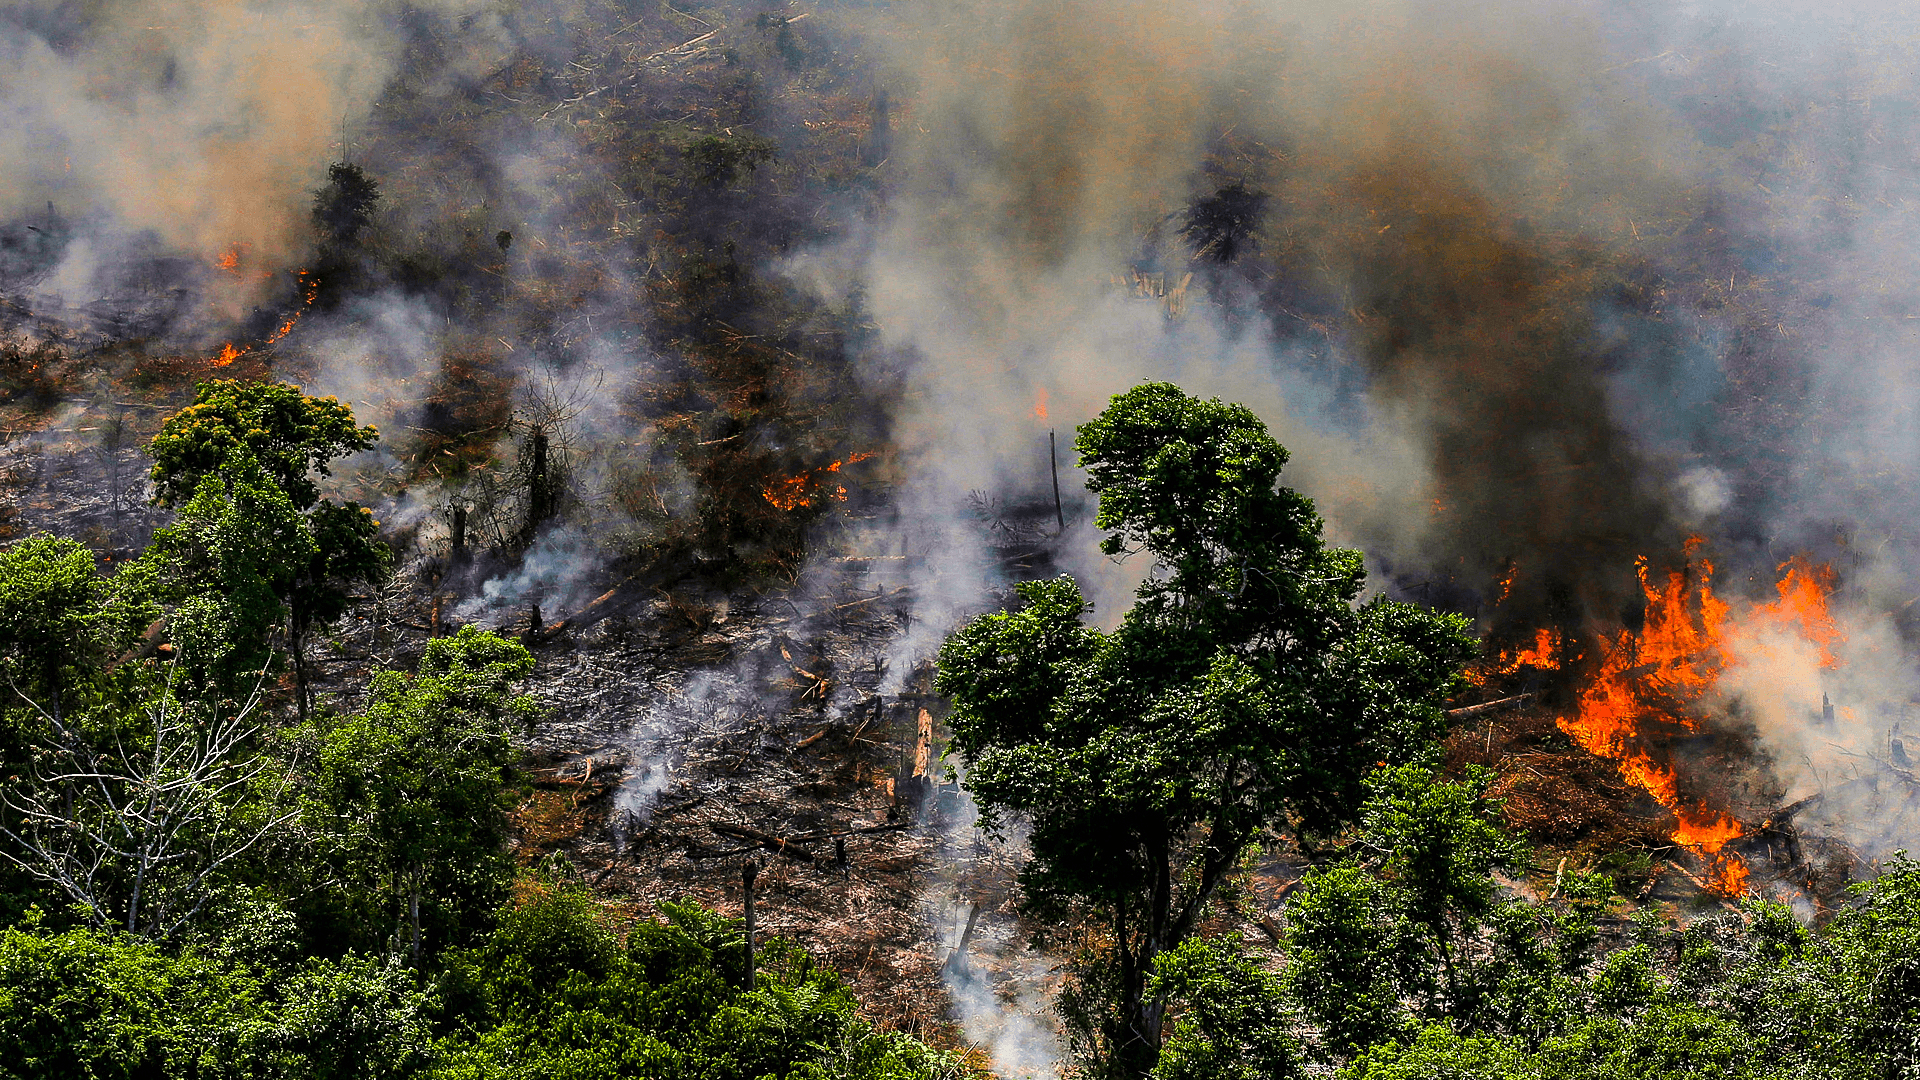 redditwallpaper. Brazil fight Amazon rainforest fires